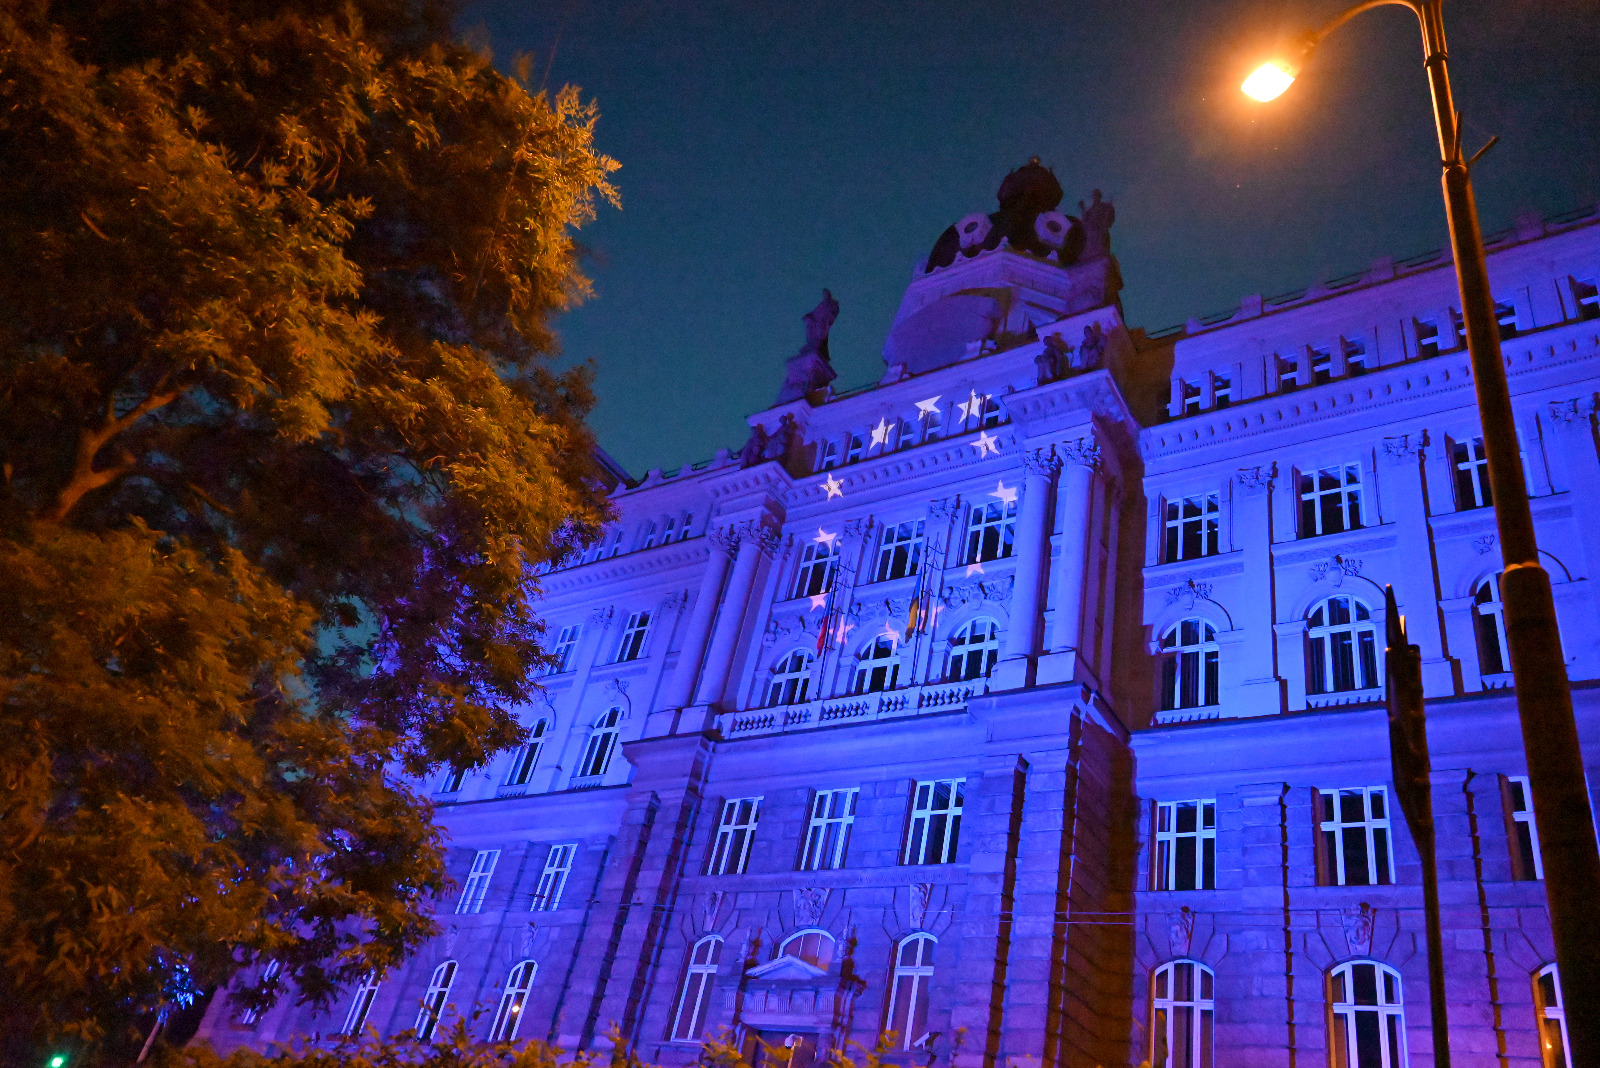 Přečtete si více ze článku V předvečer výročí 20 let v EU se významné budovy napříč Českem rozsvítí modrou barvou